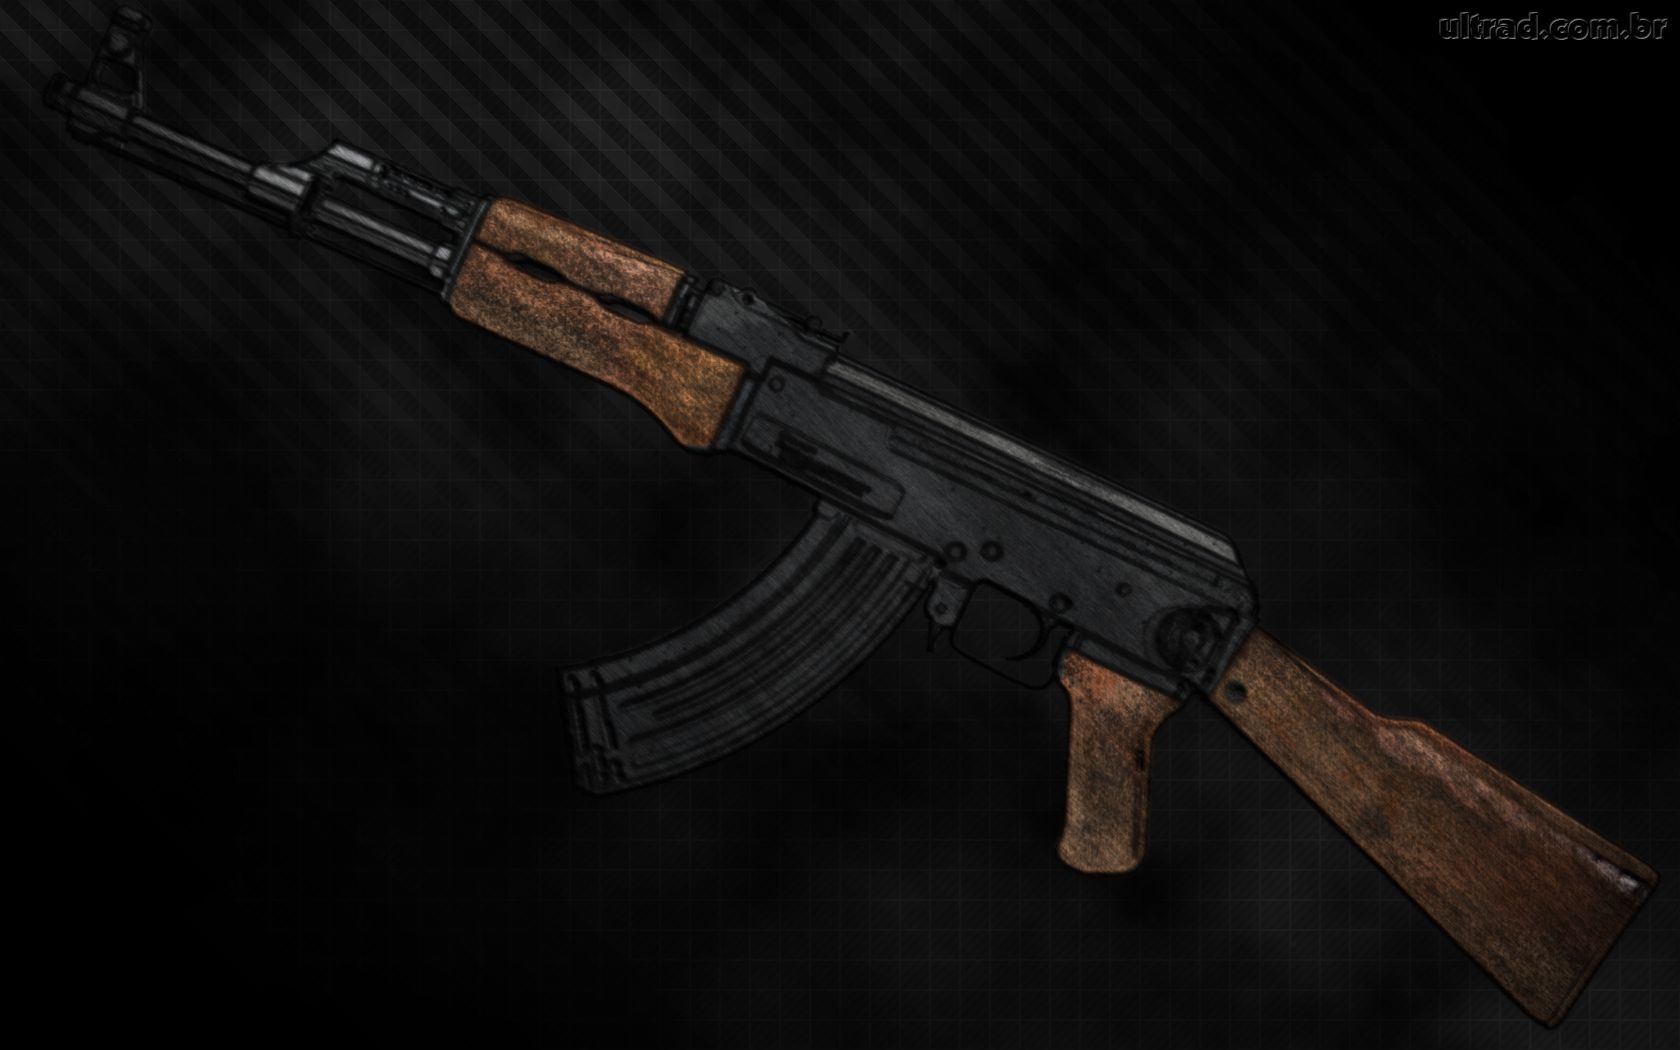 Bạn là người yêu thích sự độc đáo và muốn khám phá thế giới của các loại vũ khí? Hãy xem qua hình ảnh của AK 47 trên nền đen tối, nơi nó hiện lên rực rỡ và cá tính. Hình ảnh này sẽ giúp bạn hiểu rõ hơn về sức mạnh và tinh thần của loạt vũ khí này. Hãy để hình ảnh này thúc đẩy đam mê của bạn.